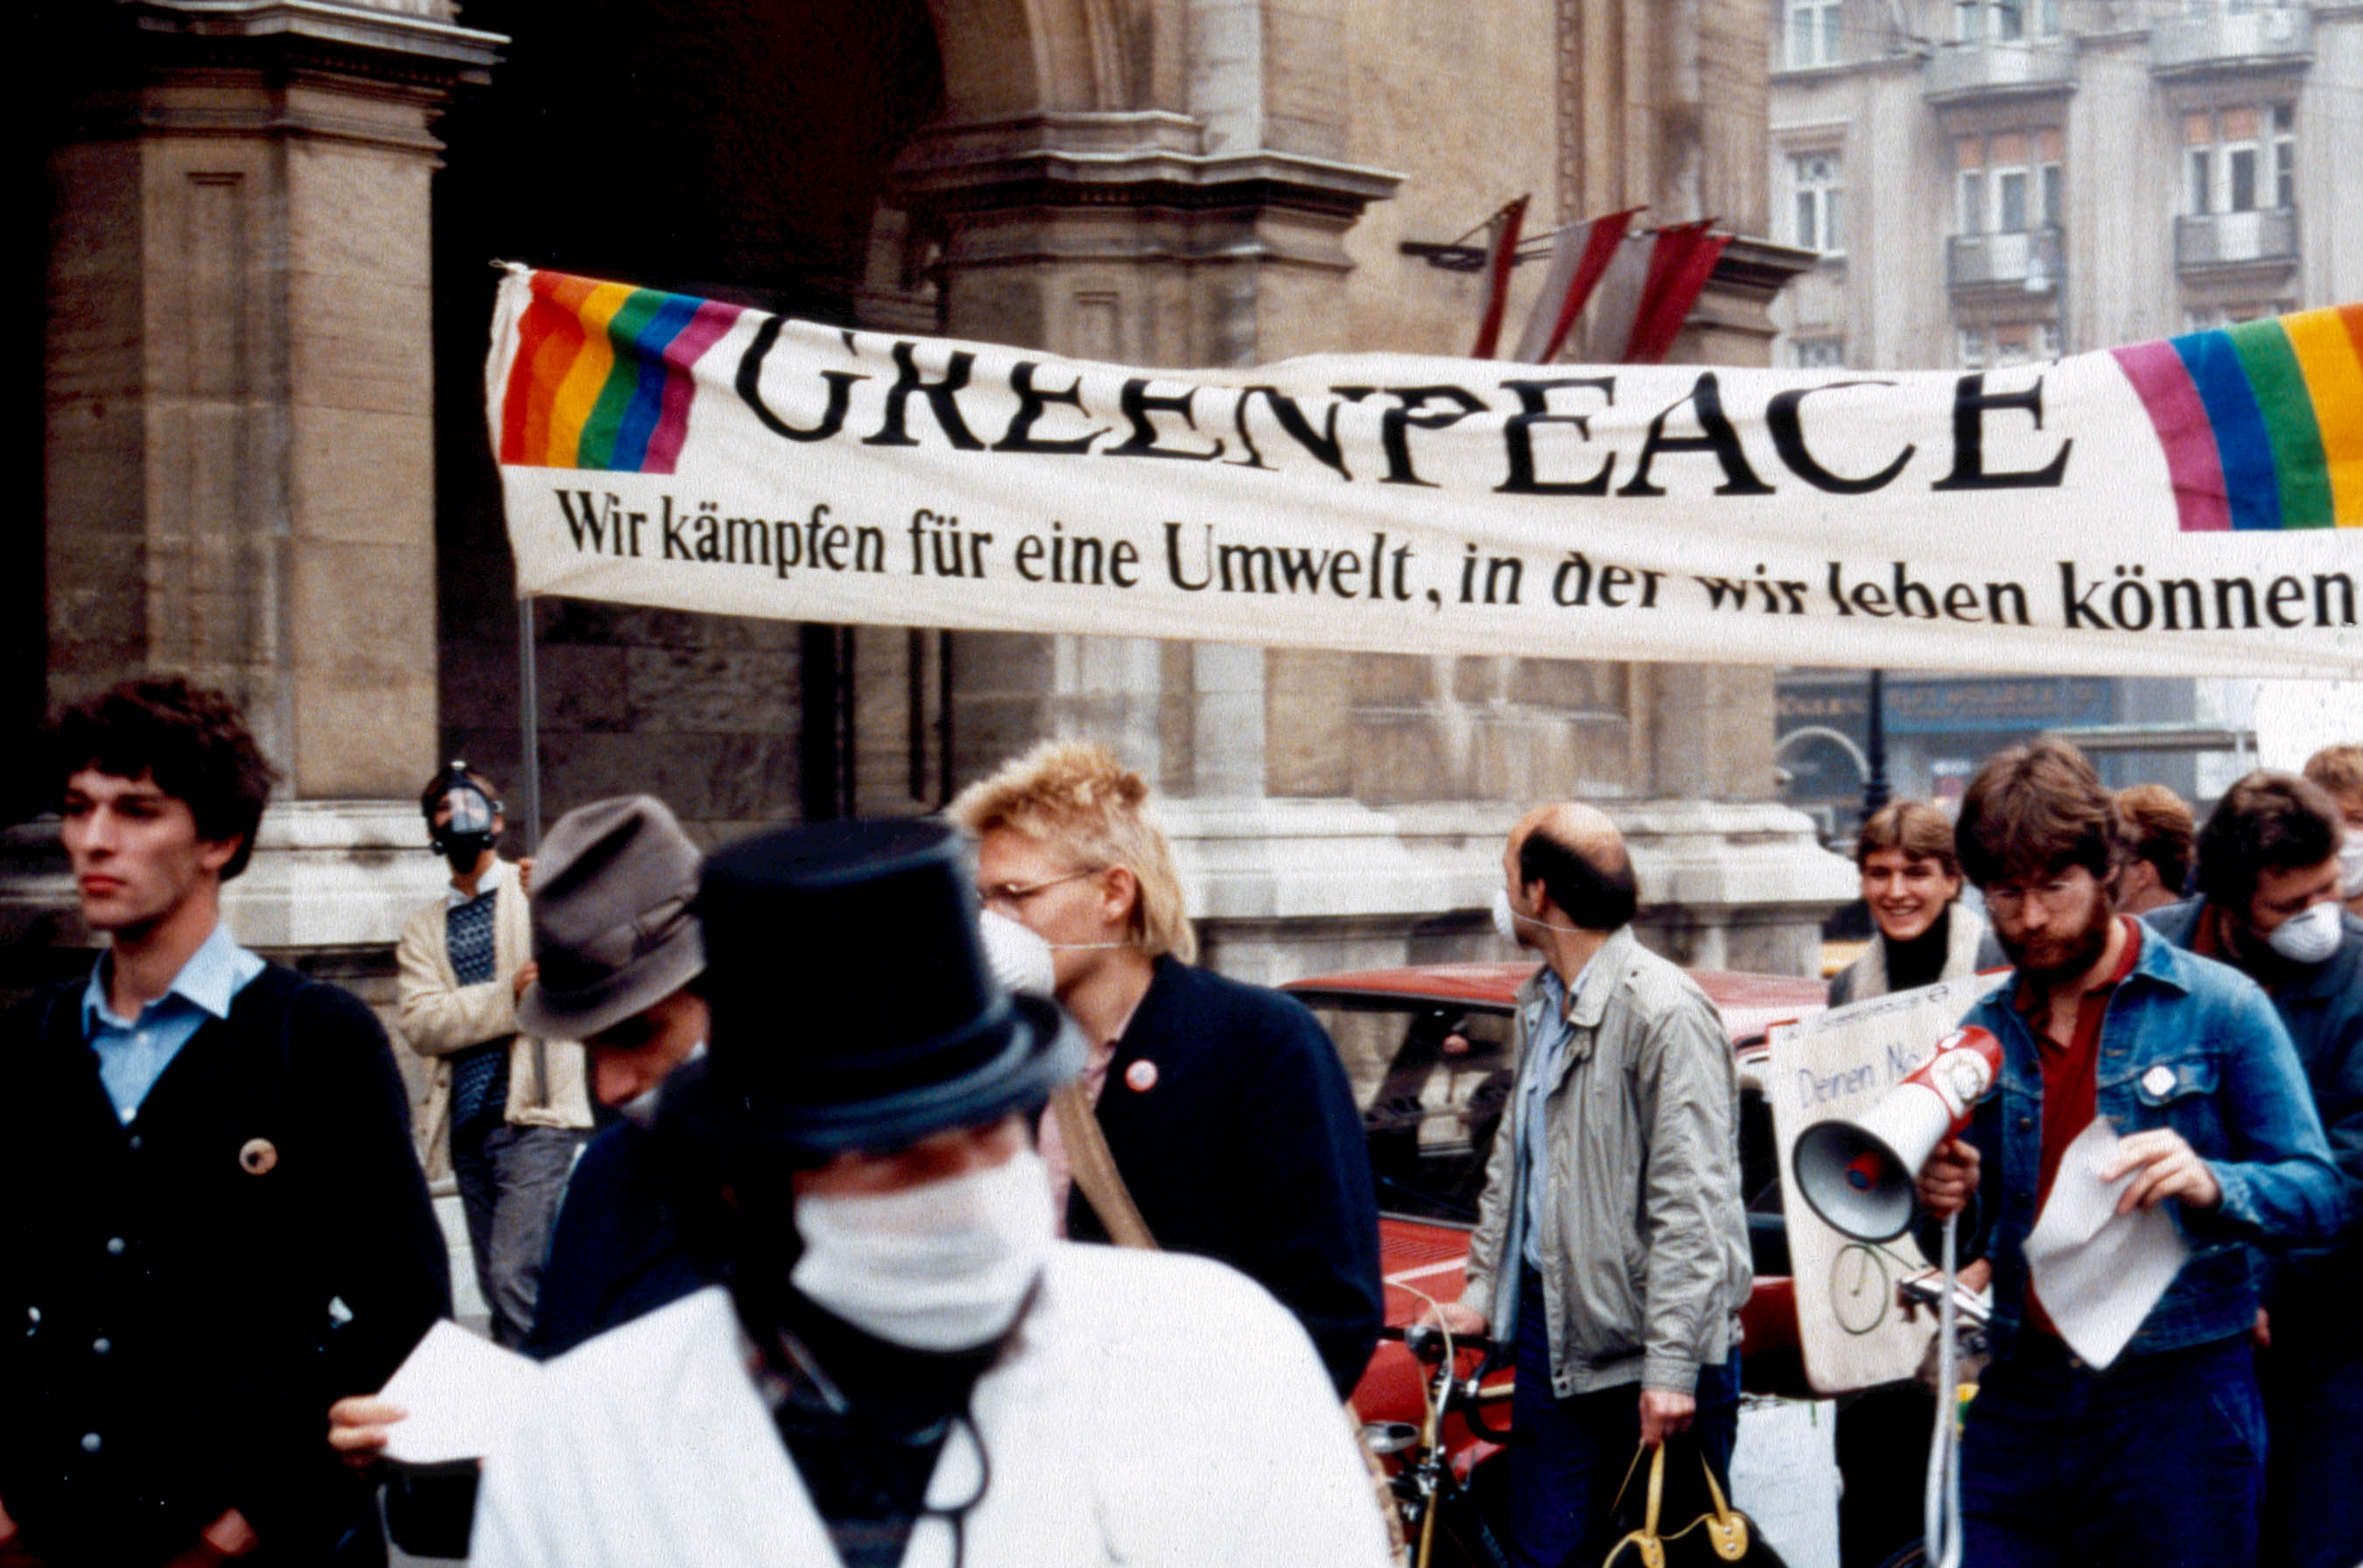 Archivnaufnahme von Demonstrant:innen mit Greenpeace-Banner